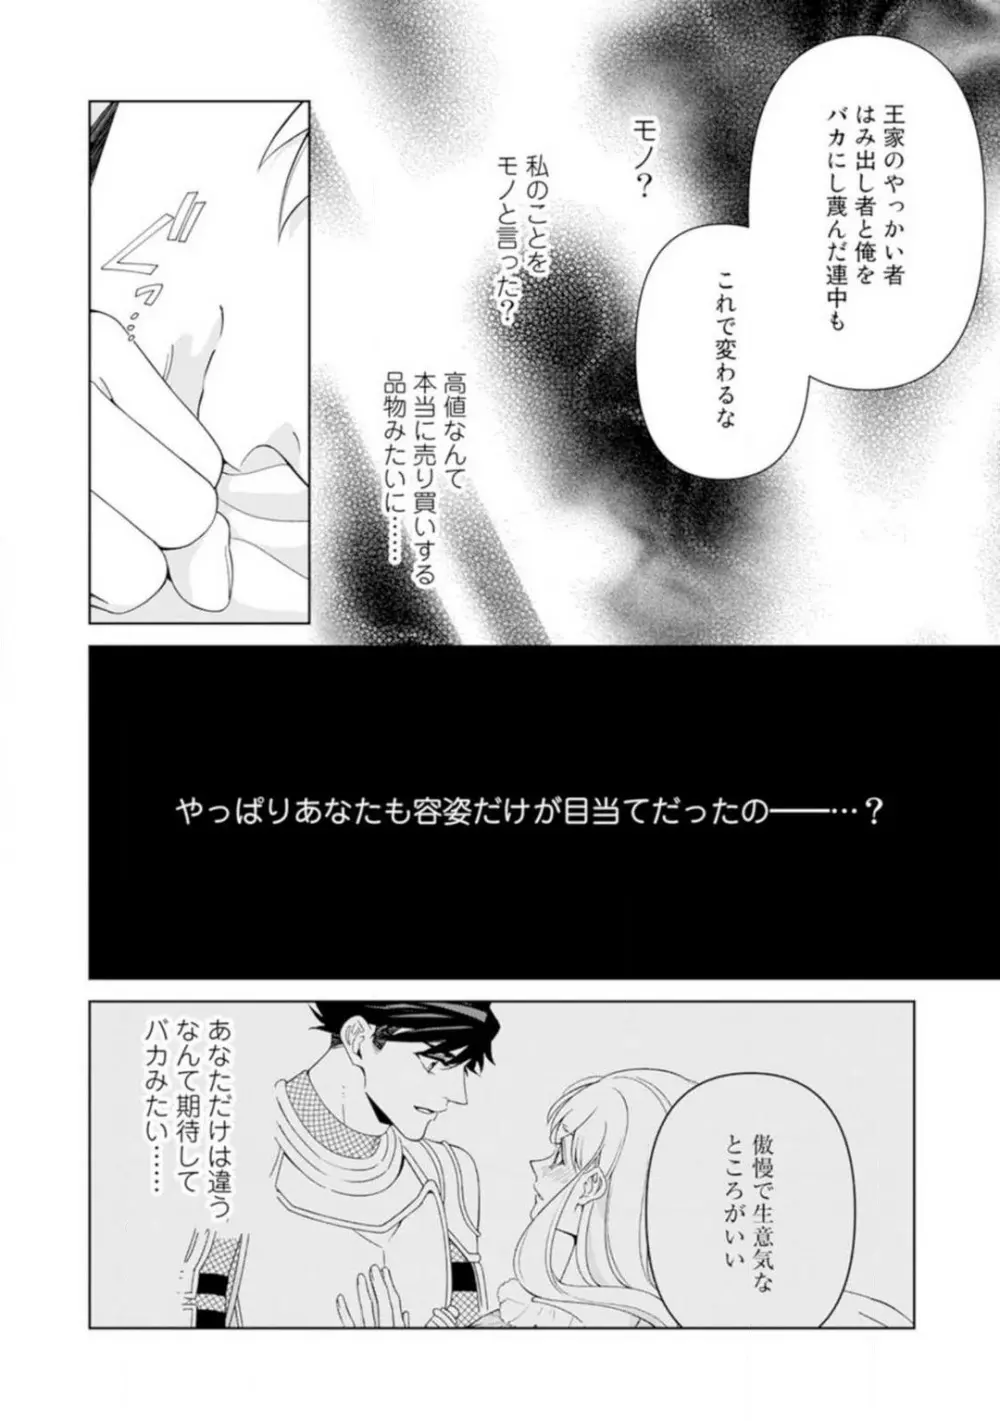 灼熱の王の淫愛〜熱い指にとかされて〜 1-6 28ページ